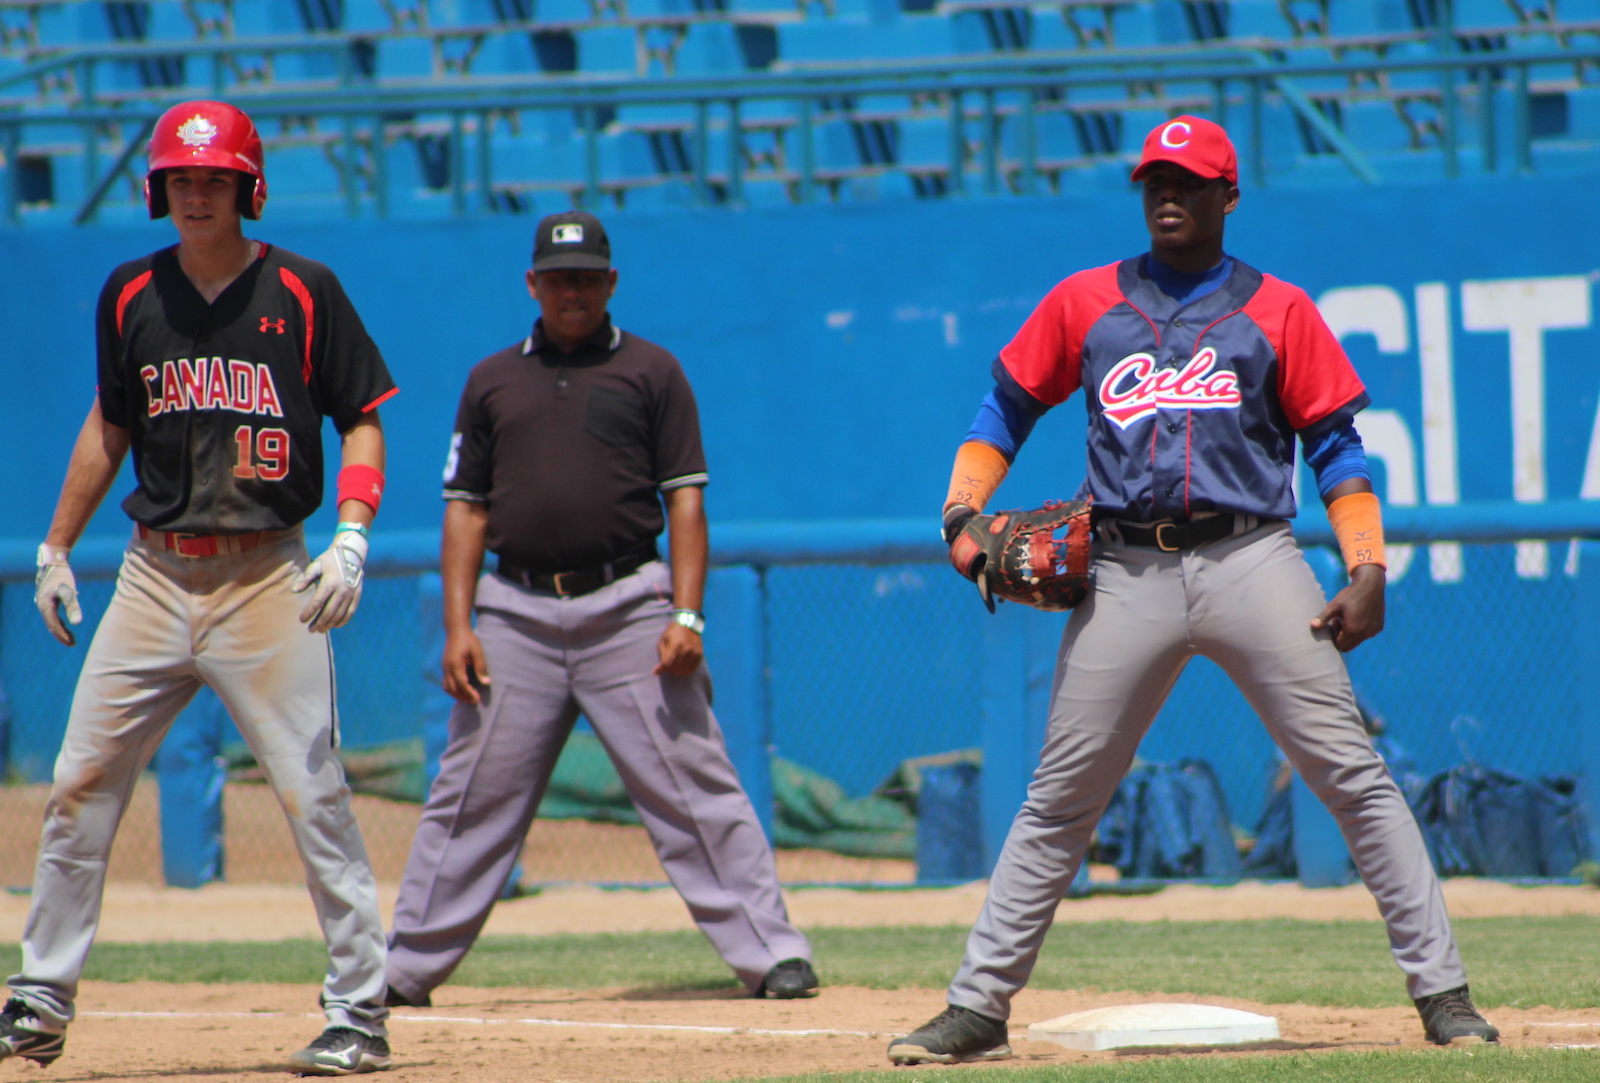 L'équipe nationale junior à Cuba : les Cubains remportent aussi le dernier match de la série